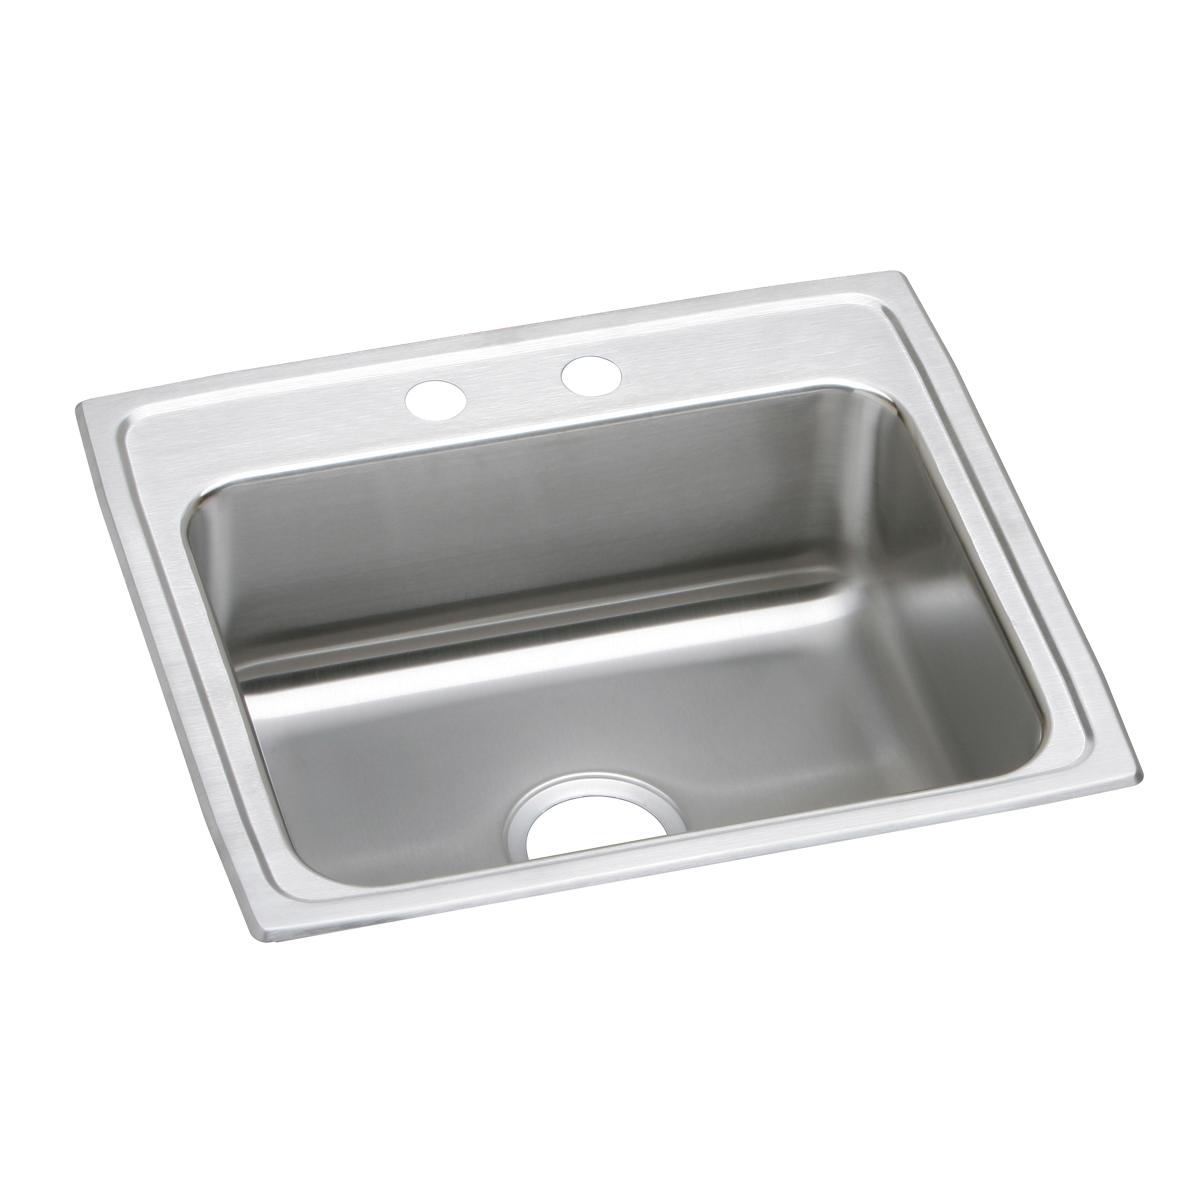 Elkay Stainless Steel Single Bowl Drop-in Sink 1264073